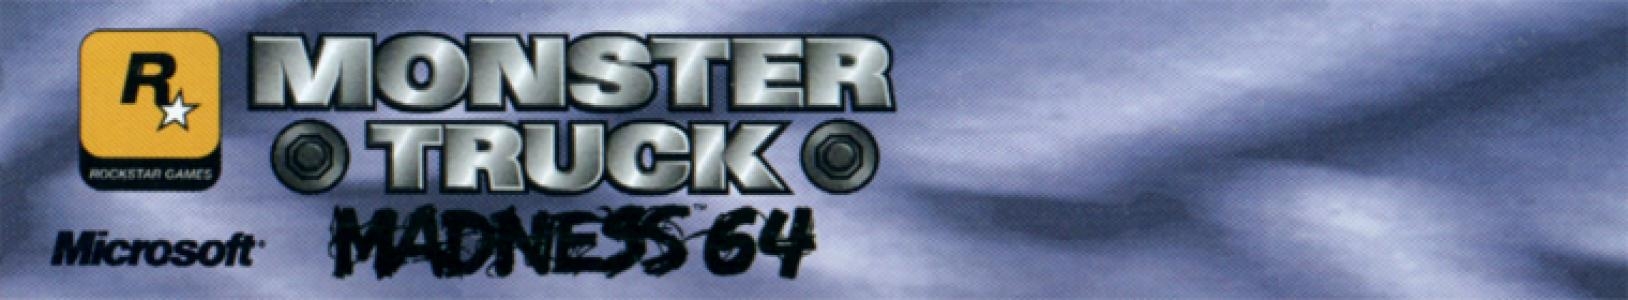 Monster Truck Madness 64 banner